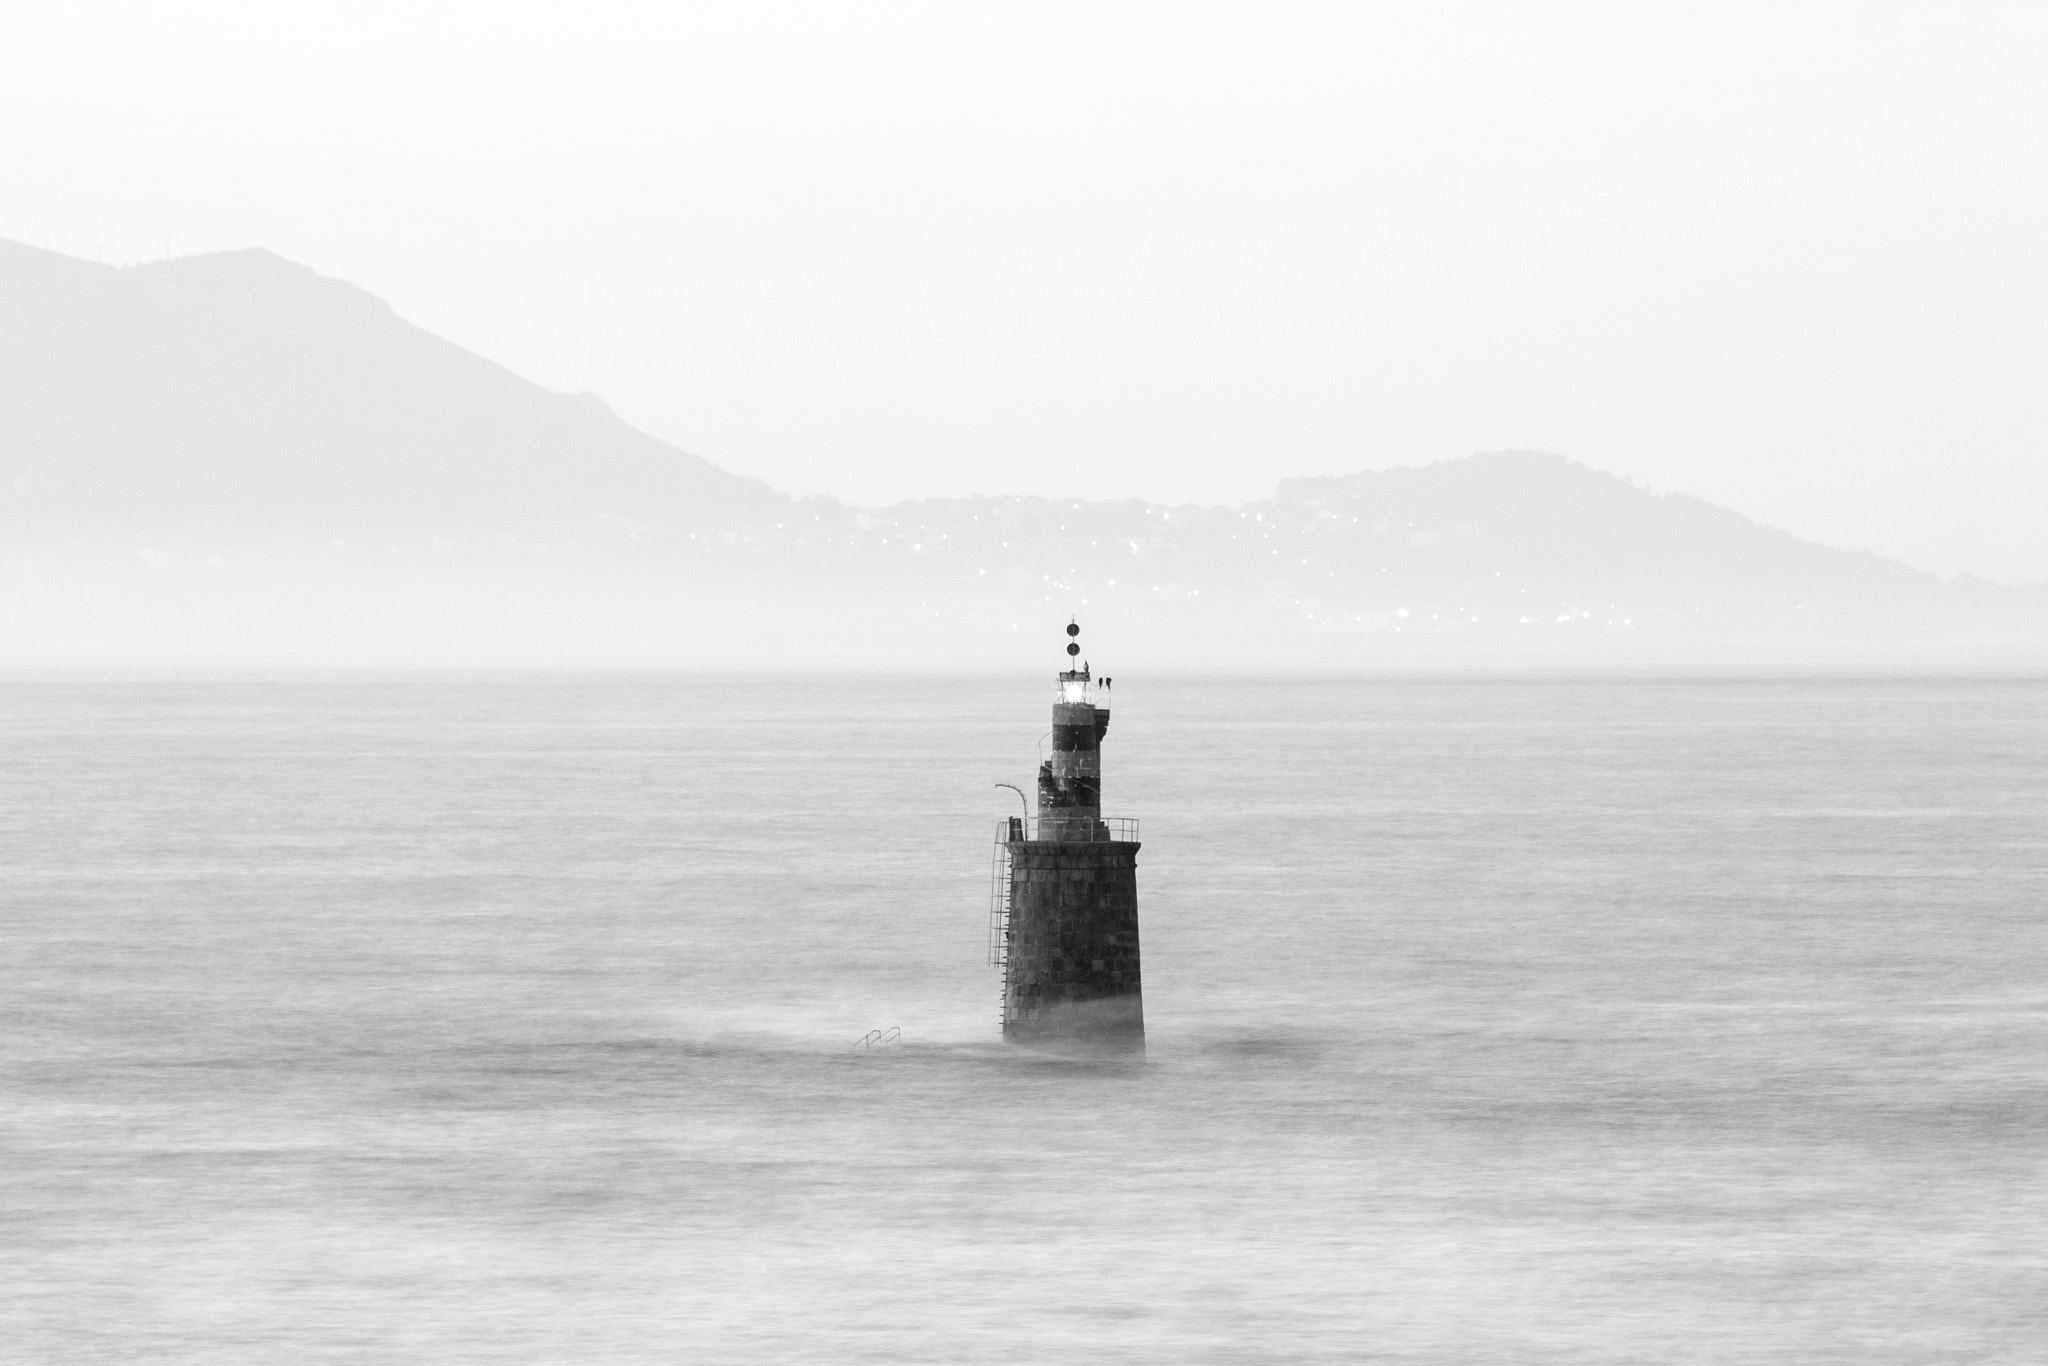 Canon EOS 60D sample photo. Carromeiro lighthouse photography